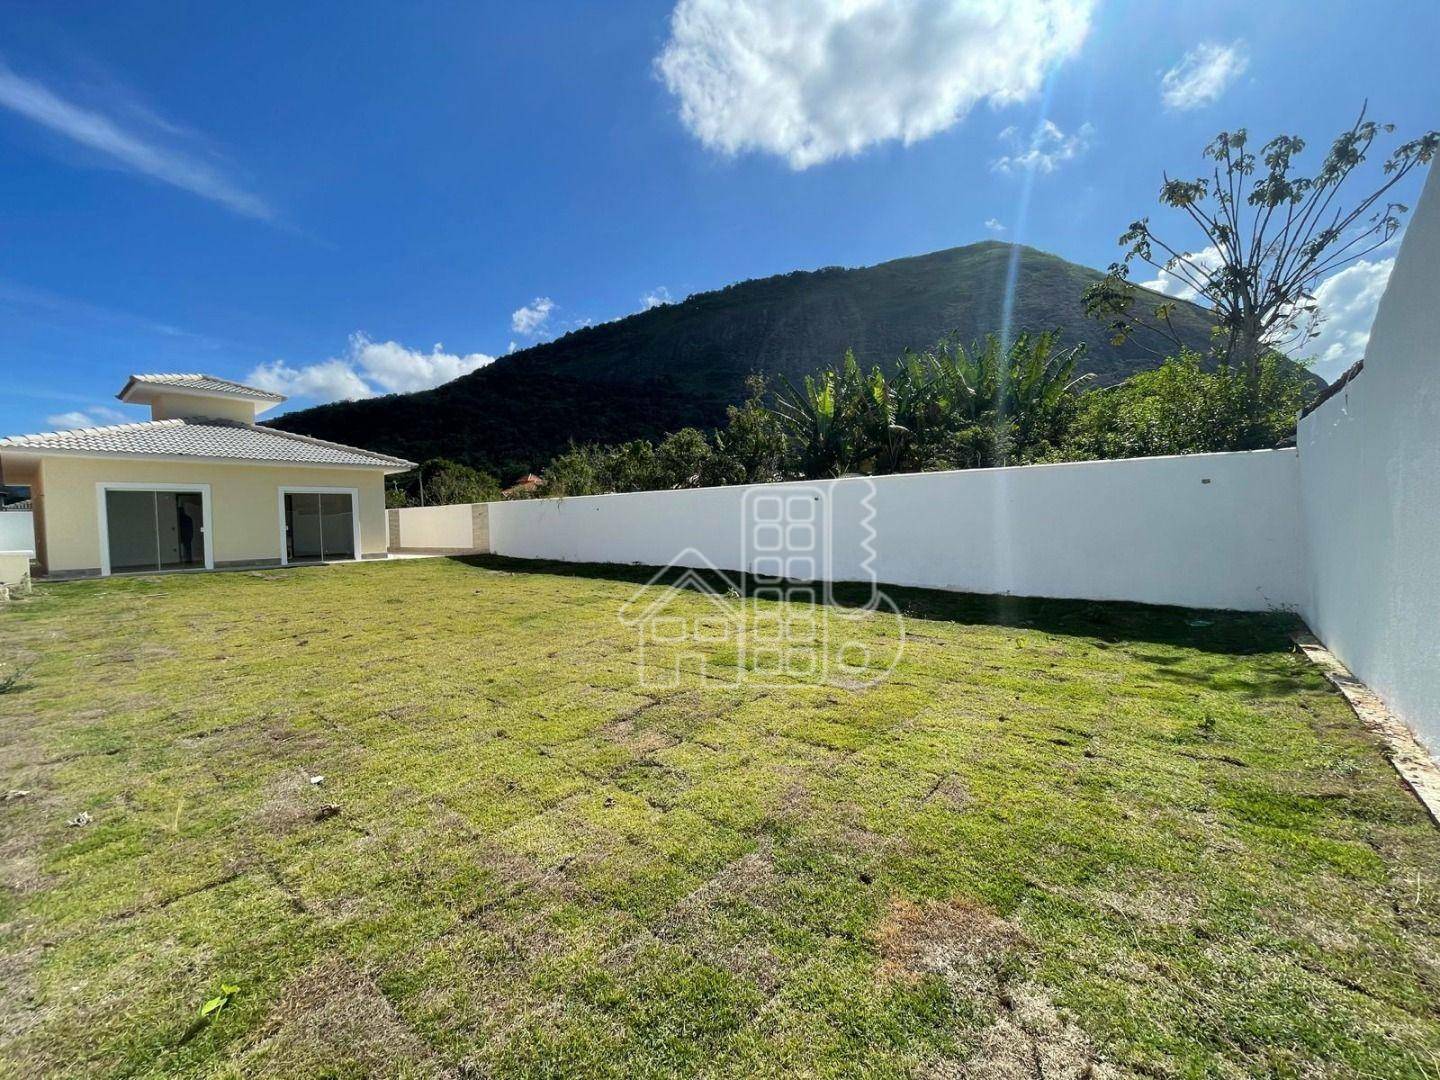 Casa com 3 dormitórios à venda, 89 m² por R$ 535.000,01 - Itaipuaçu - Maricá/RJ